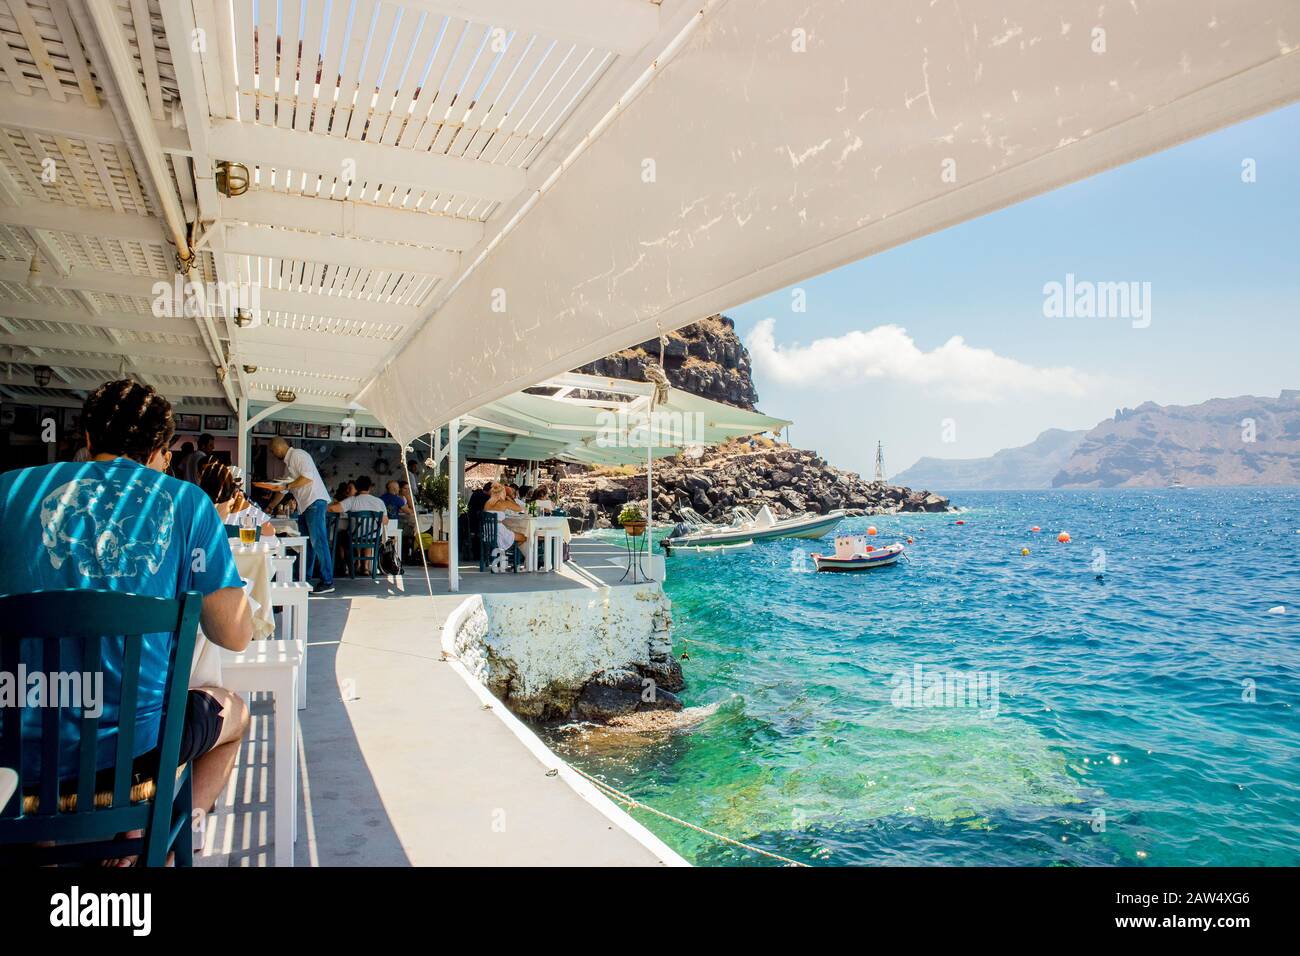 Oia, Santorini/Griechenland 14Jul2019-Ammoudy Bay mit Fischerbooten und Fischtavernen. Touristen verbringen Zeit und essen in traditionellen griechischen Tavernen. Stockfoto